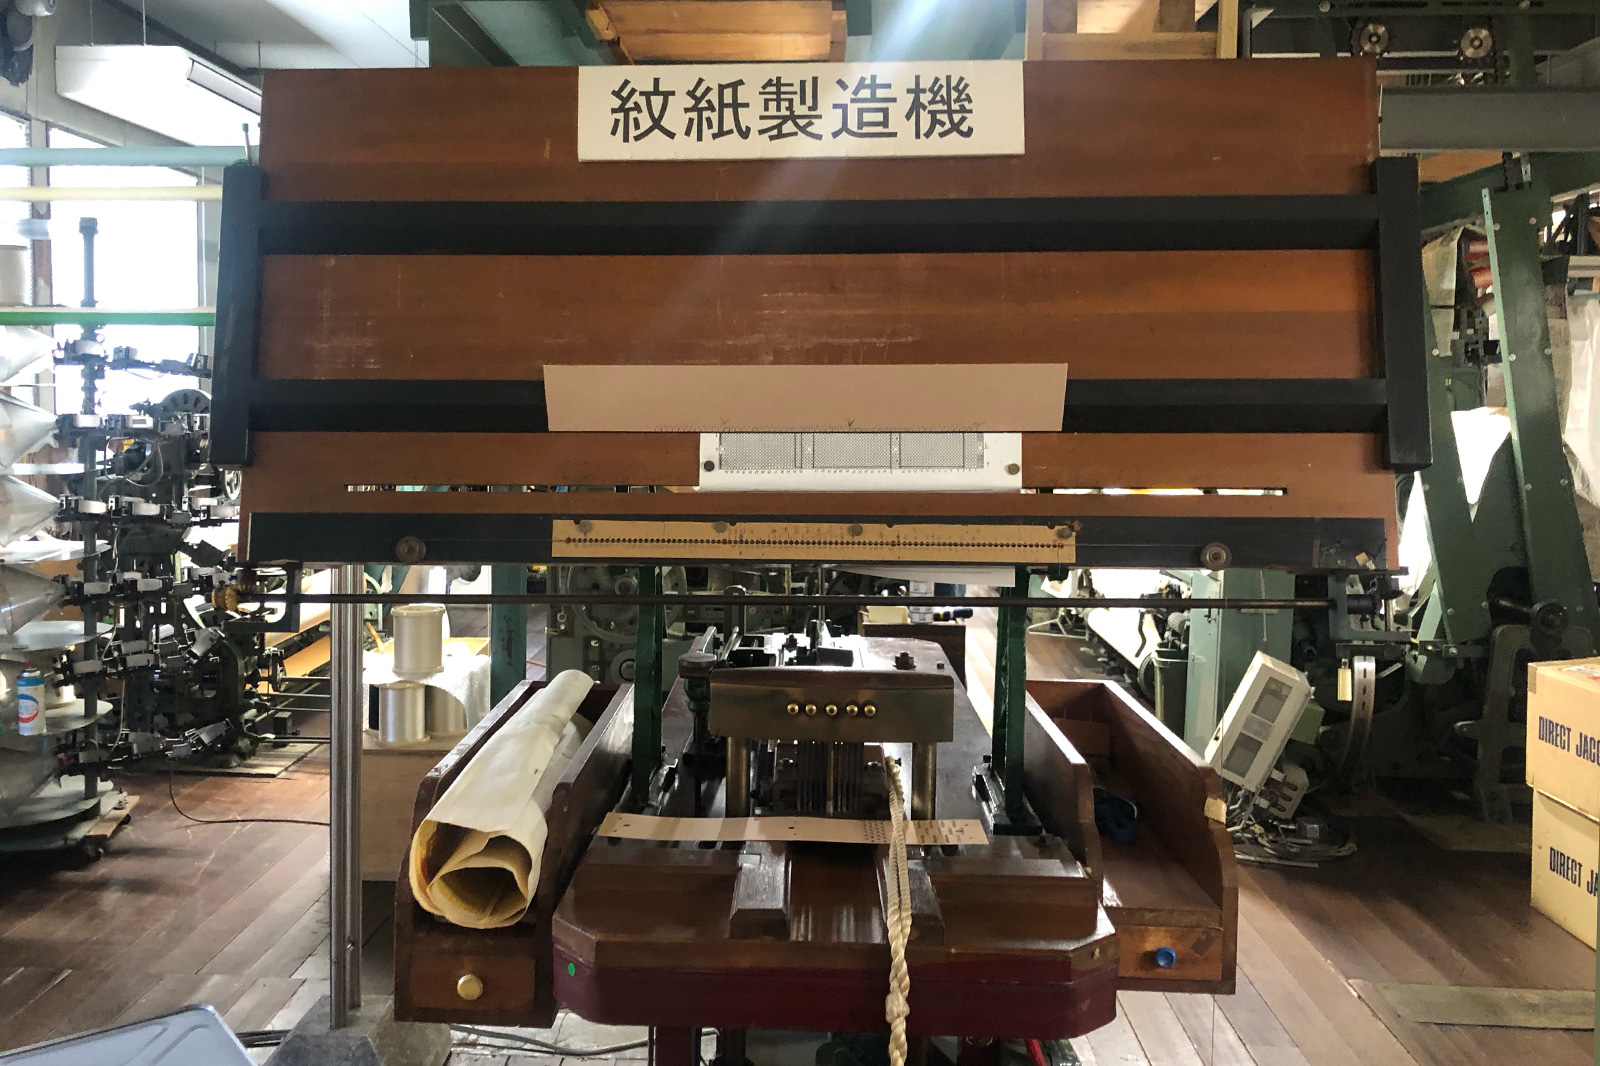 現在はほとんど使用されていない紋紙製造機。